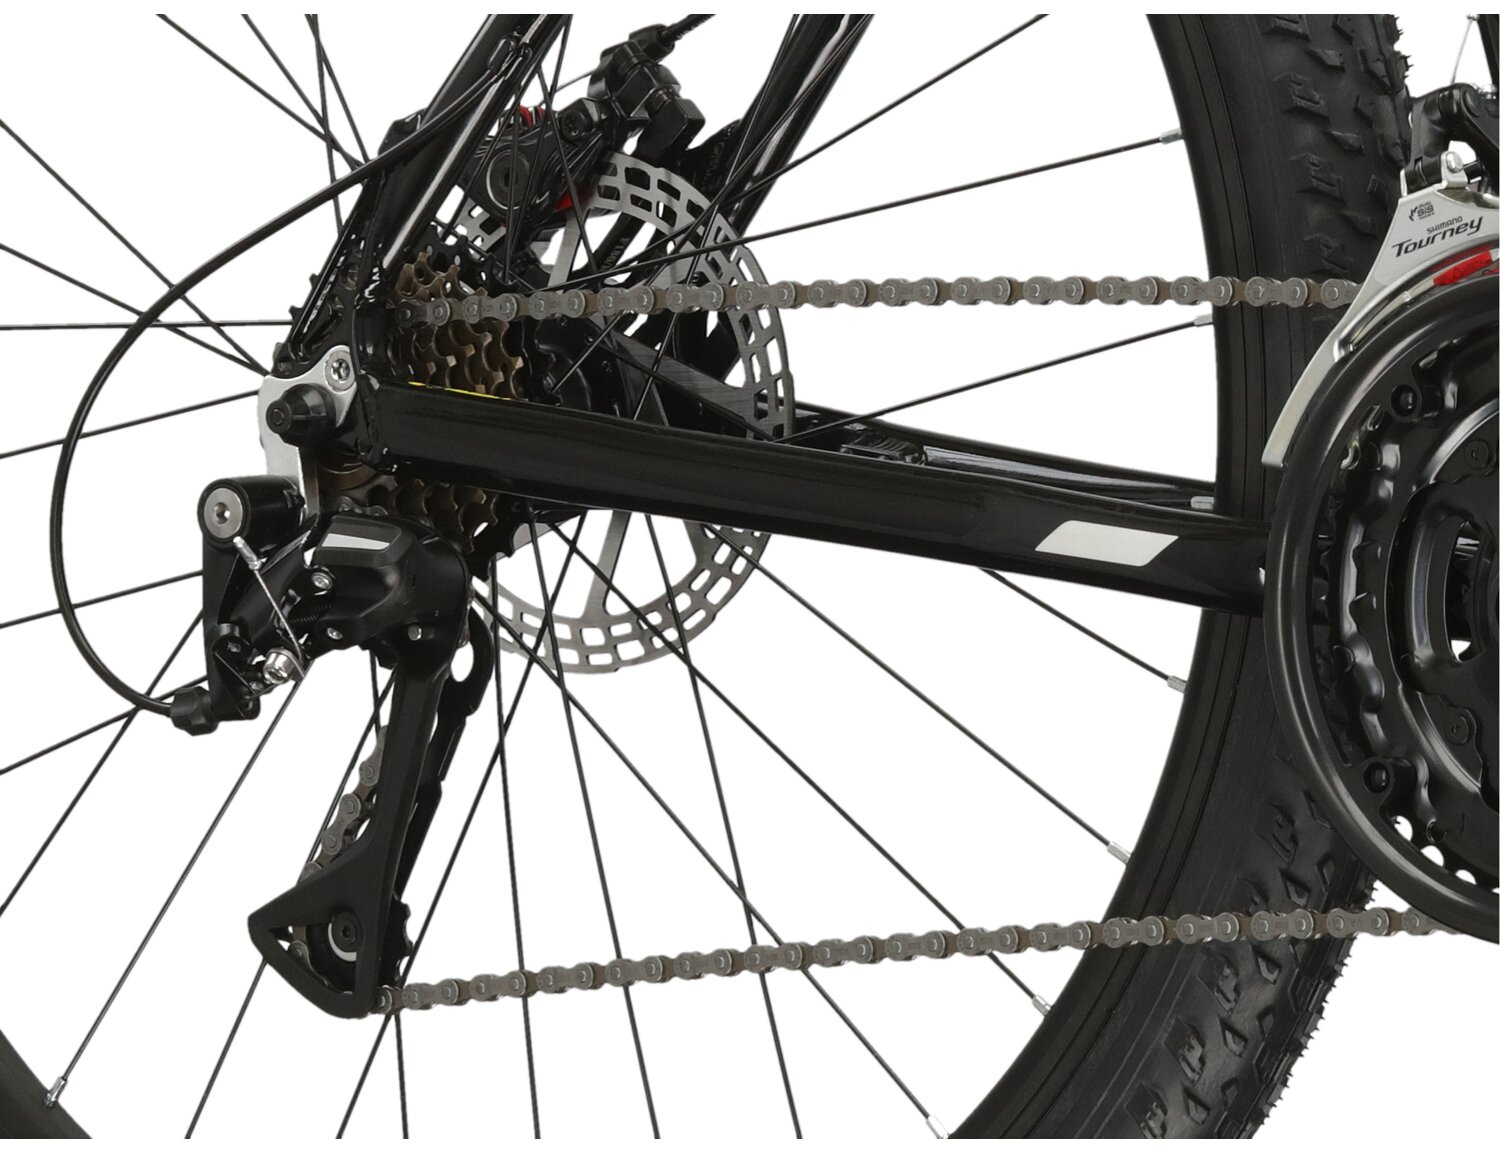  Tylna siedmiobiegowa przerzutka Shimano Acera RD M3020 oraz mechaniczne hamulce tarczowe w rowerze górskim MTB KROSS Berg 3.1 